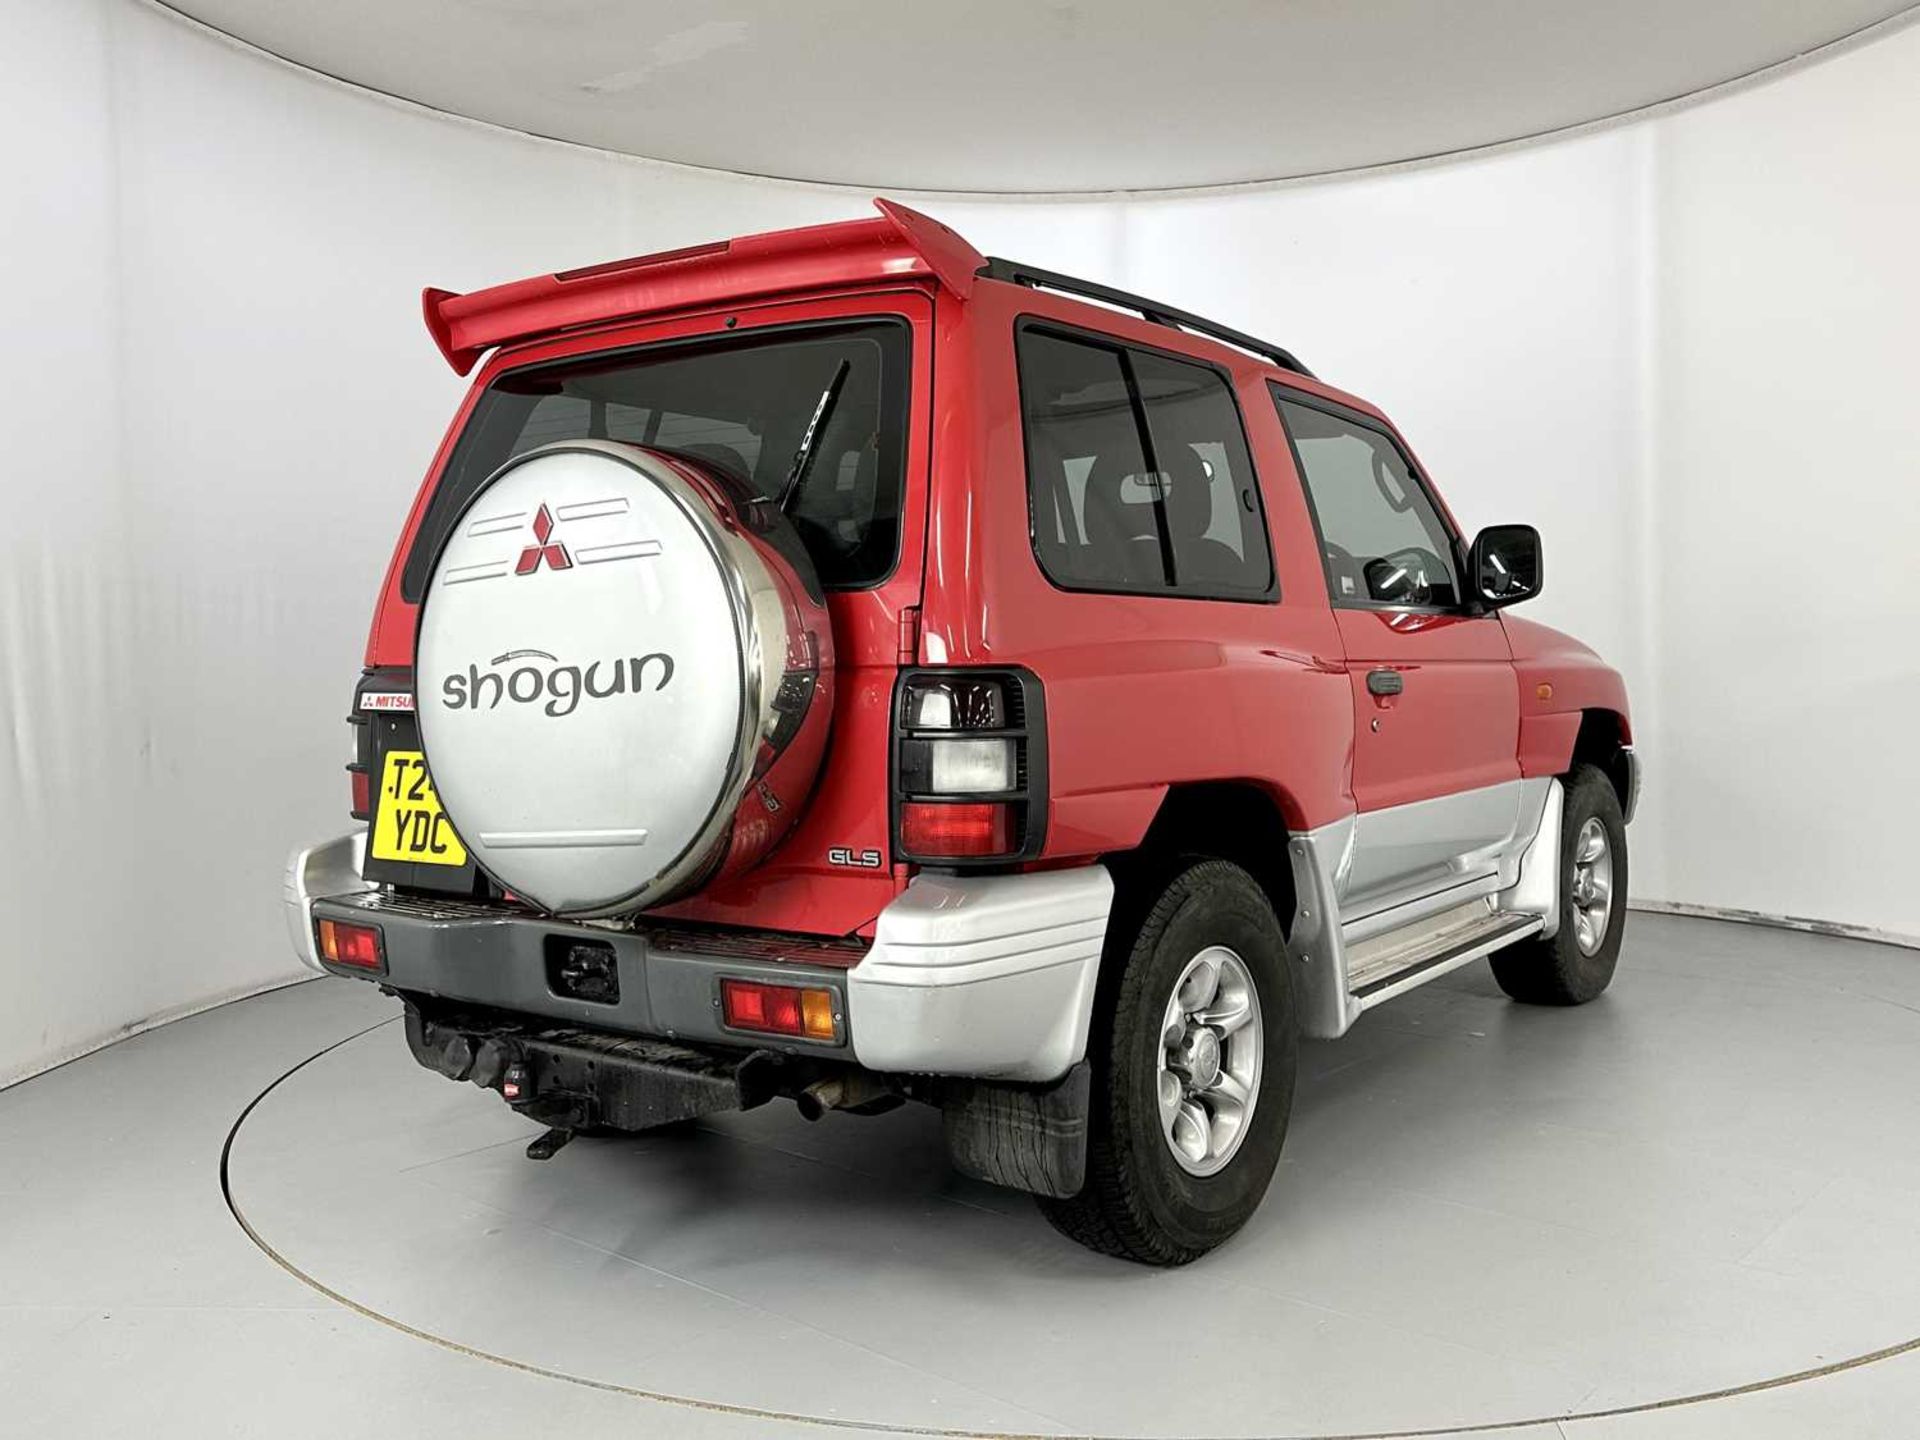 1999 Mitsubishi Shogun - Image 9 of 28